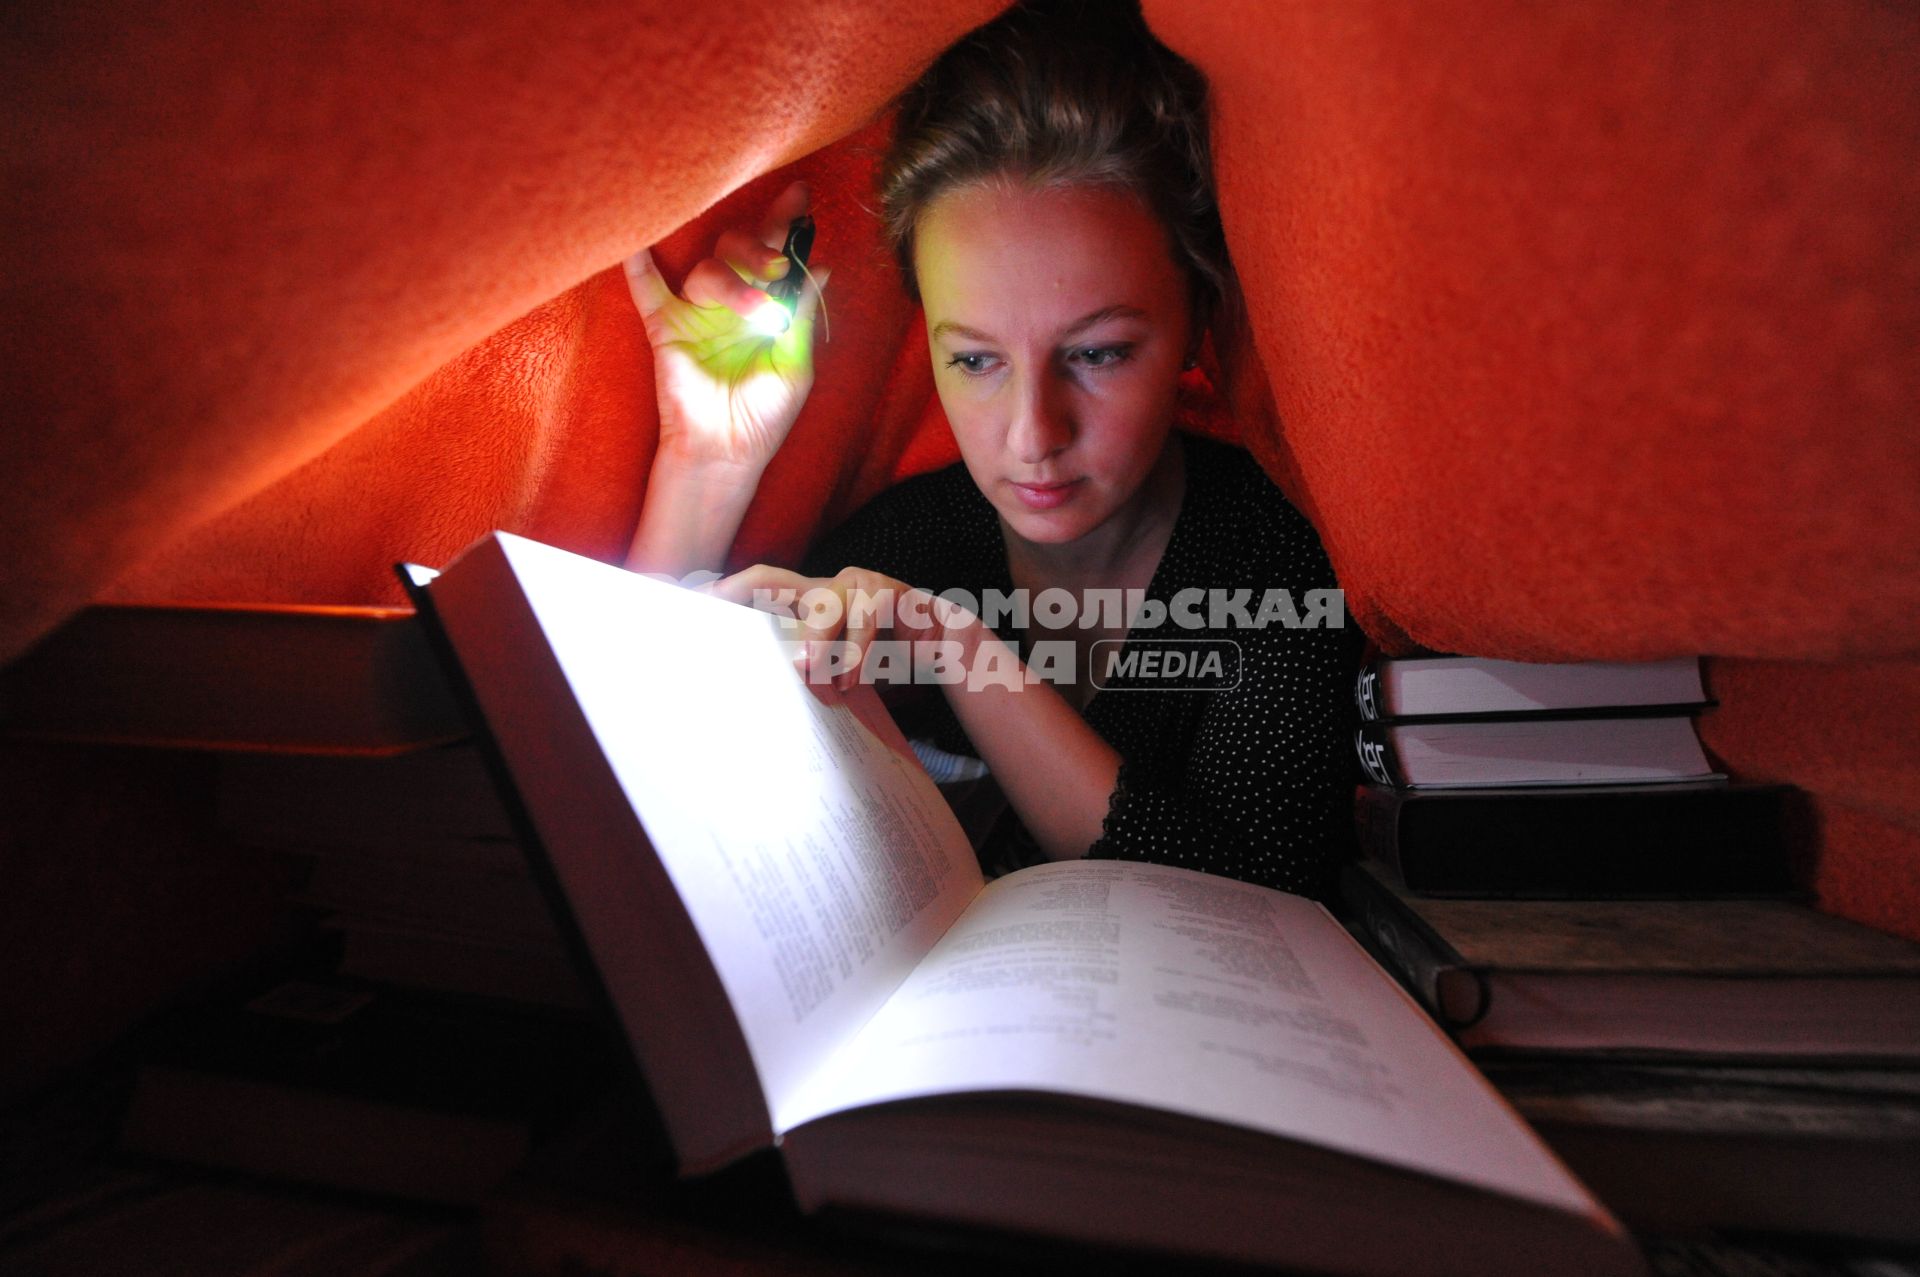 Молодая женщина читает книгу при свете фонаря.